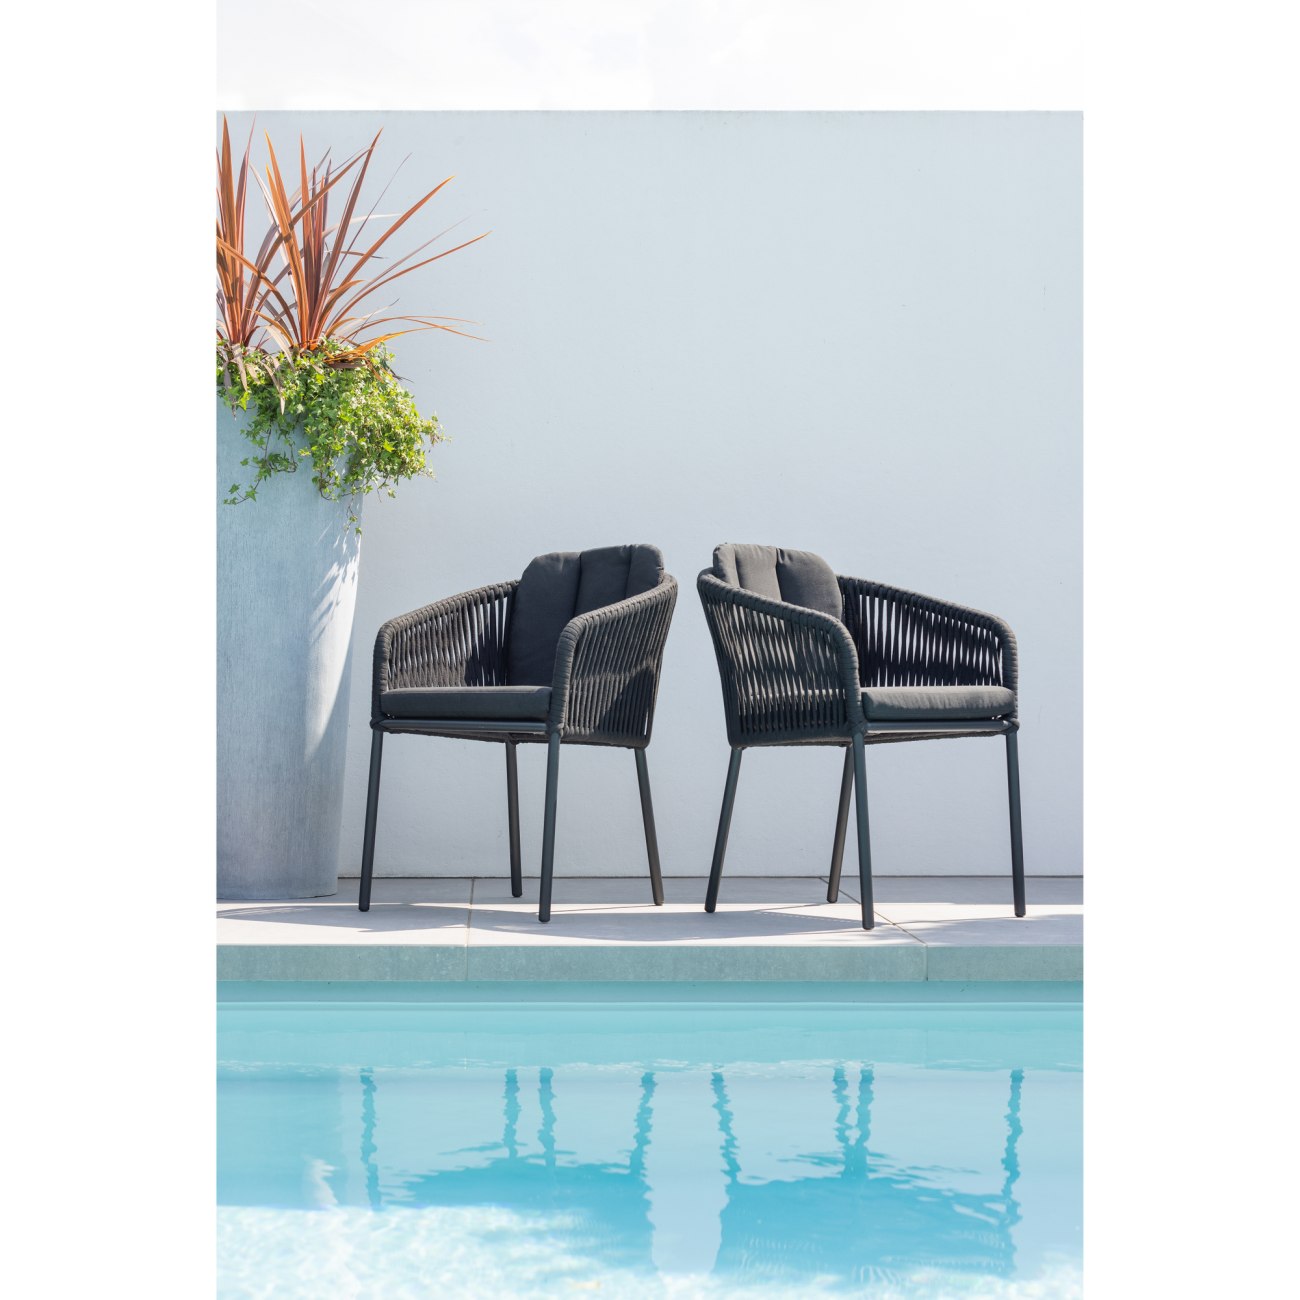 Der Gartenstuhl Yukon überzeugt mit seinem modernen Design. Gefertigt wurde er aus geflochtenem Tauwerk, welches einen schwarzen Farbton besitzt. Das Gestell ist aus Aluminium und hat eine schwarze Farbe. Der Stuhl besitzt eine Sitzhöhe von 50 cm.